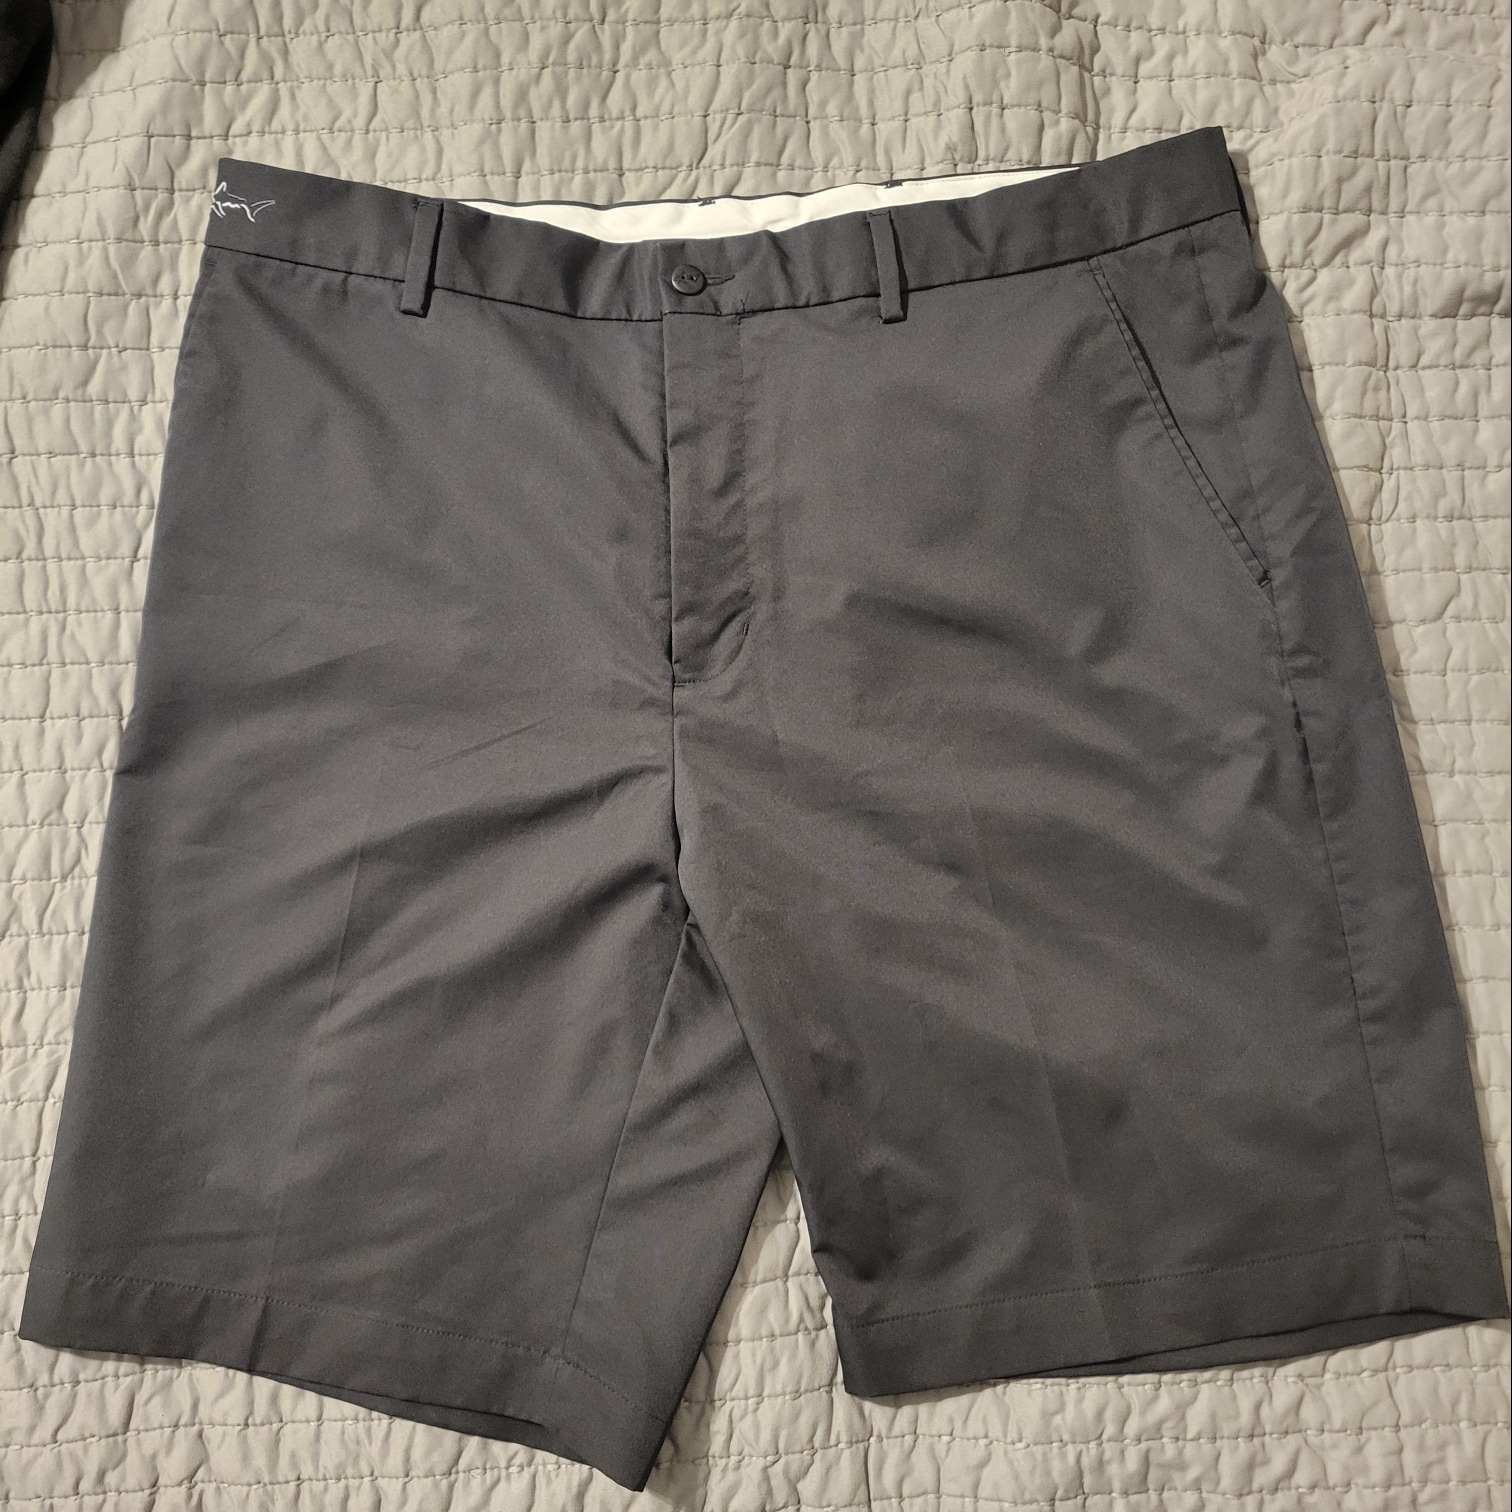 Black Used Size 38 Men's Shorts